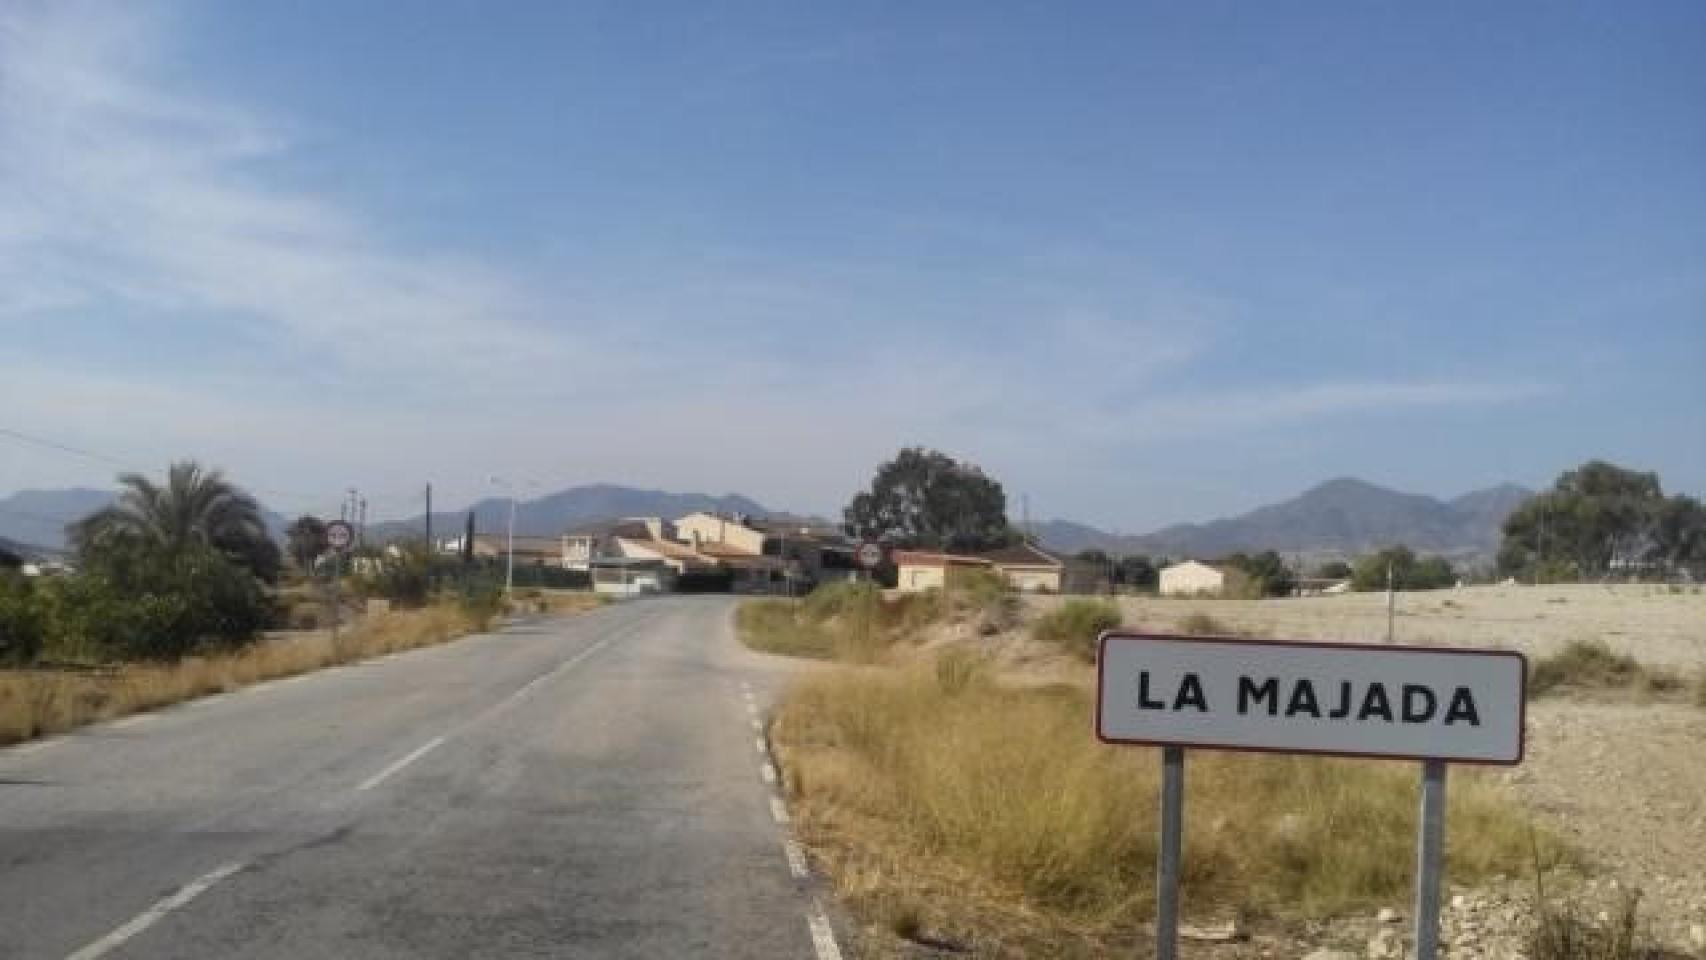 Un ciudadano marroquí ha muerto por un golpe de calor en La Majada, una pedanía de la localidad murciana de Mazarrón.